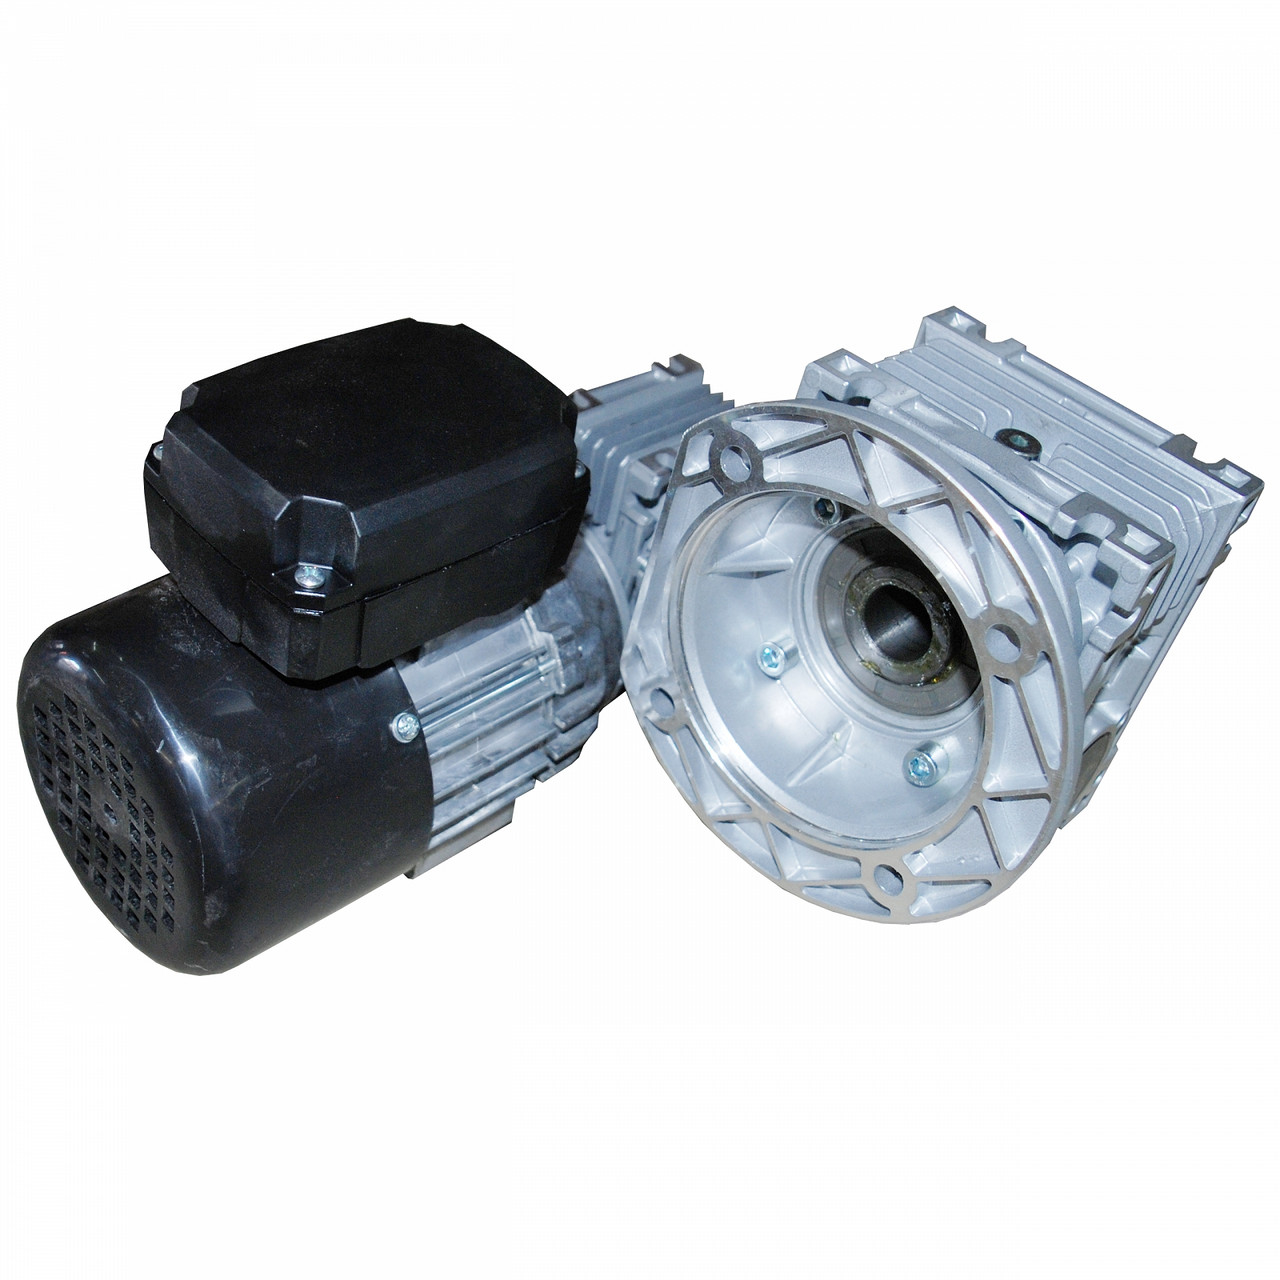 Моторедуктор NMRV030/050 електродвигун однофазний 0,18 kW - 10 об/хв подаючий механізм пальника i=300